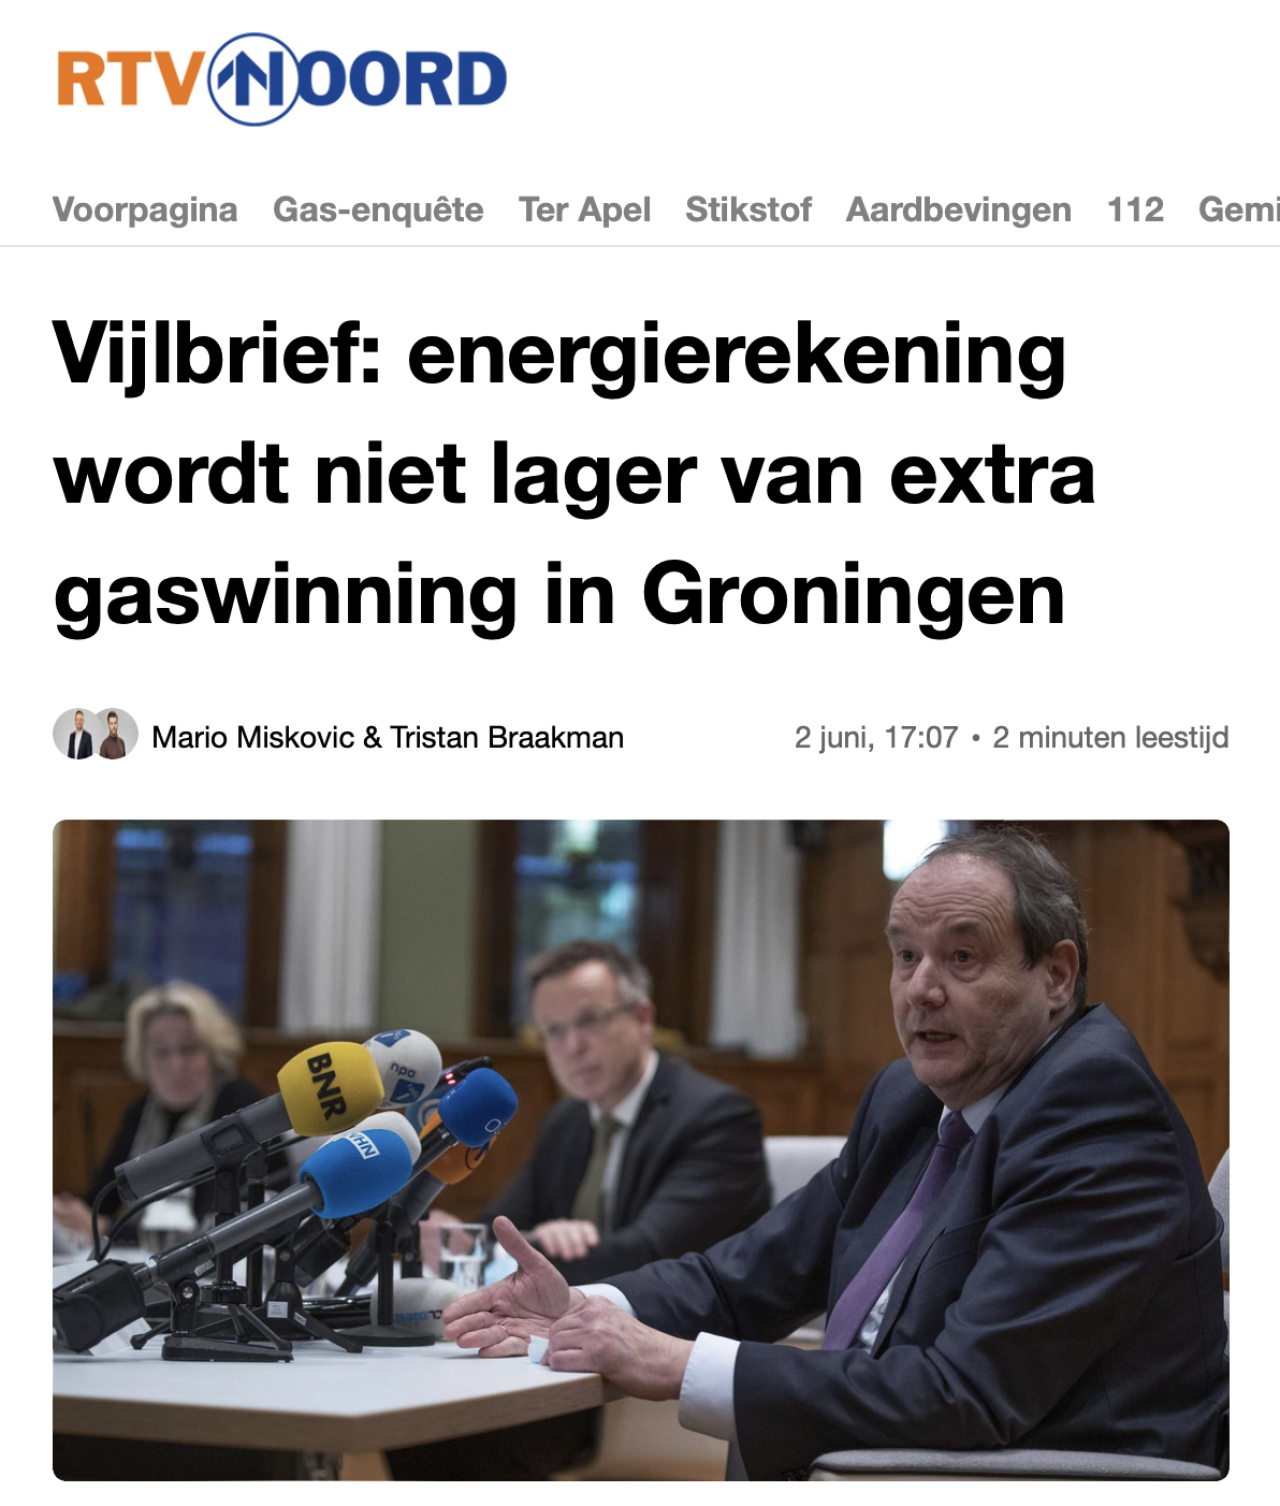 RTV Noord. Vijlbrief: energierekening wordt niet lager van extra gaswinning in Groningen.